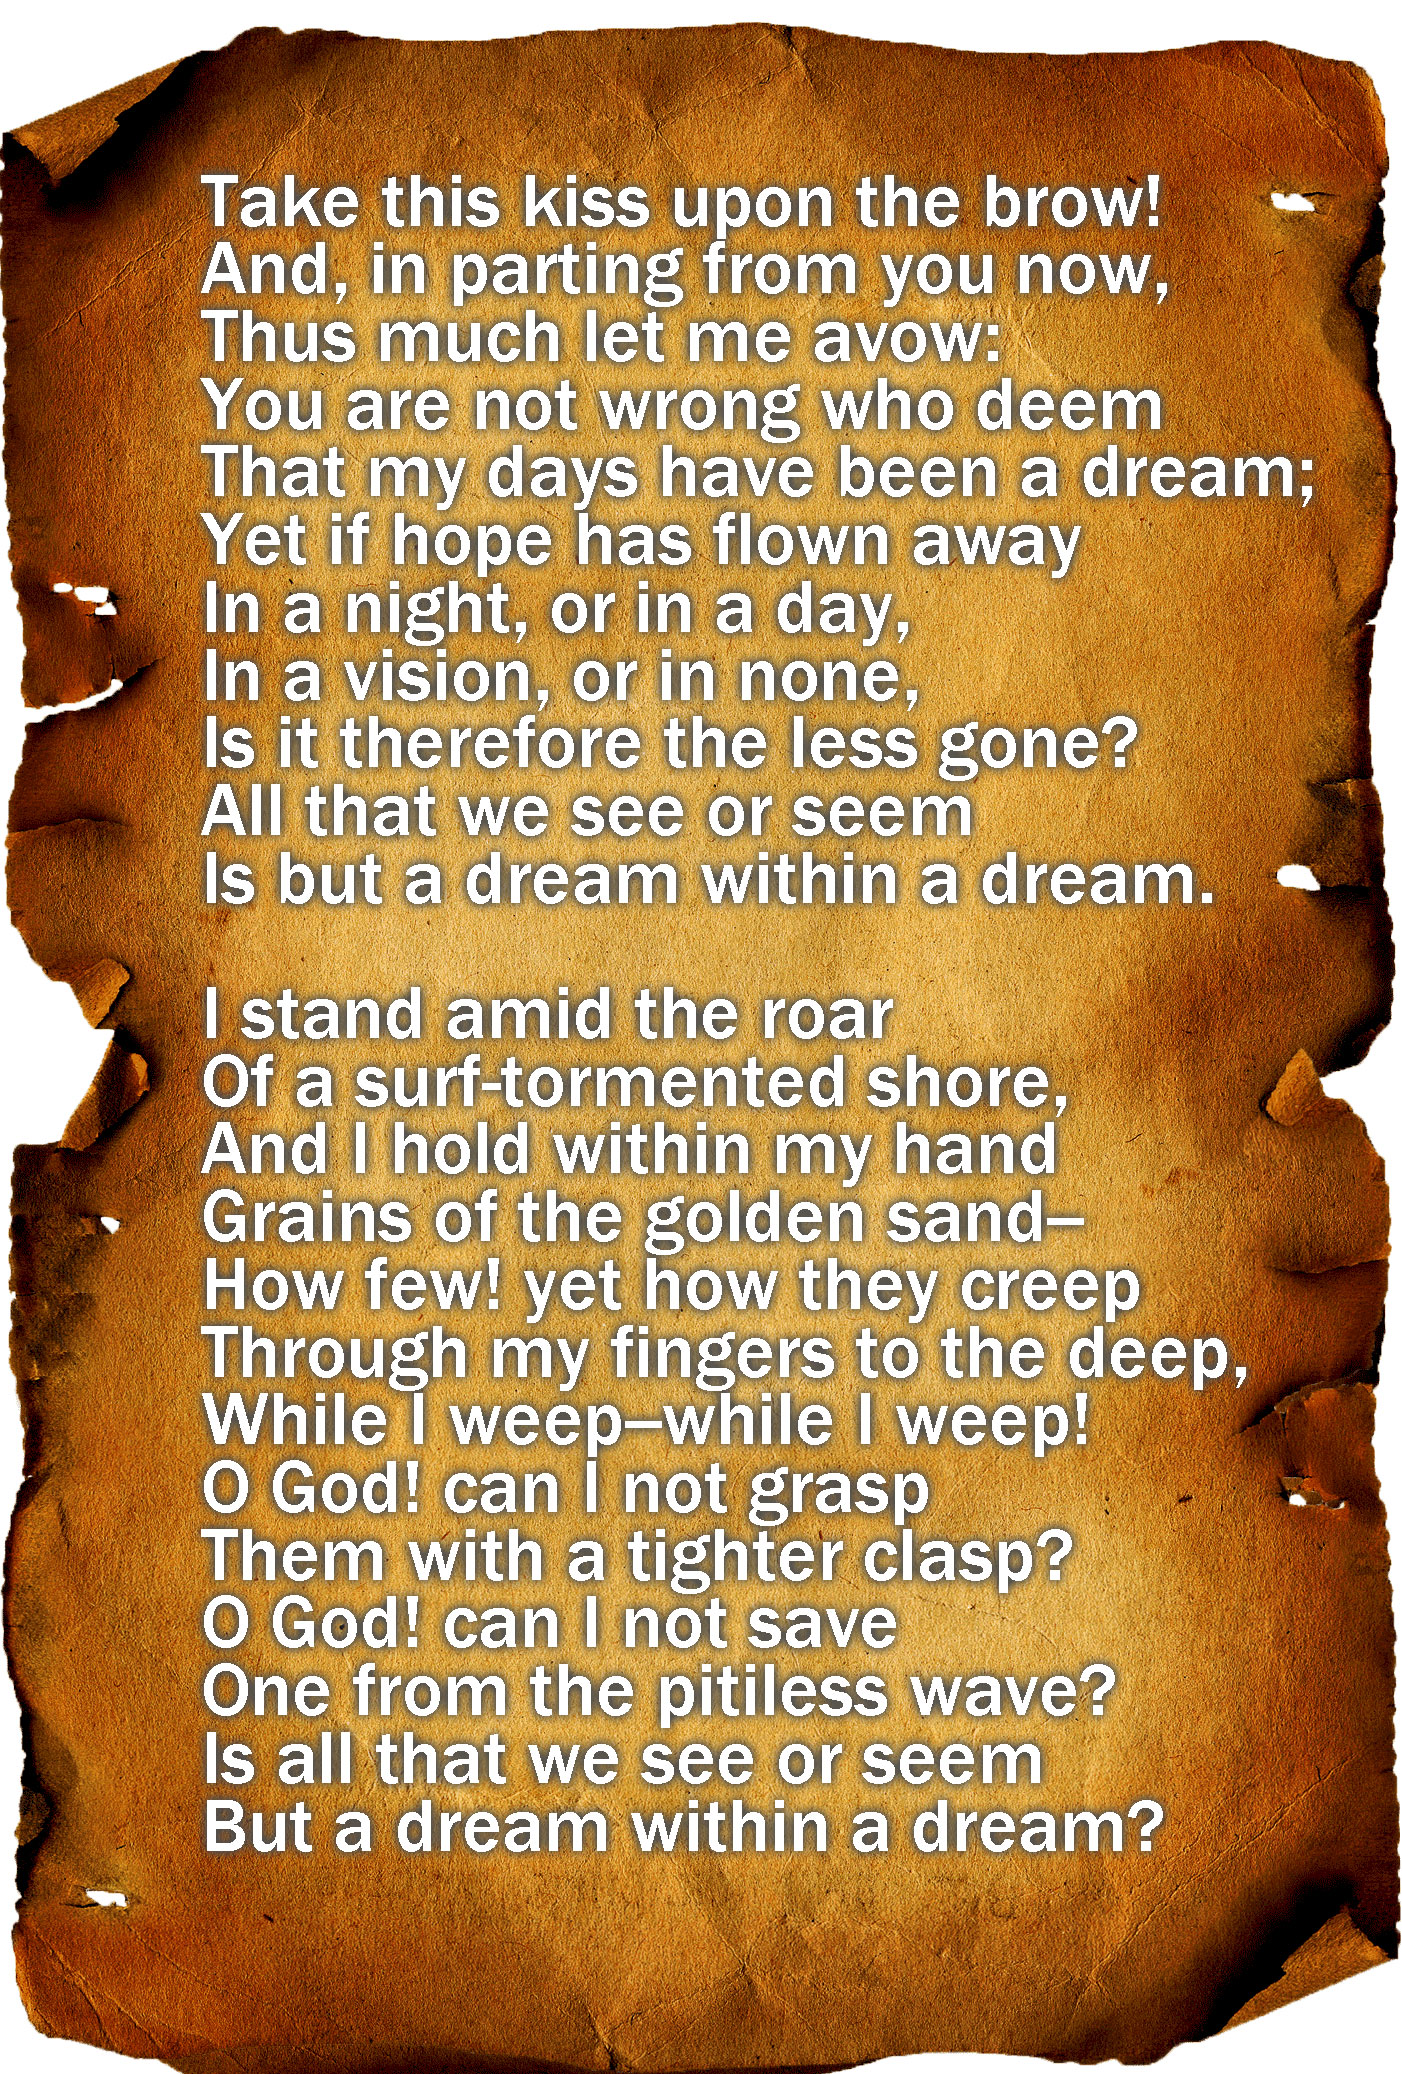 A Dream Within A Dream” by Edgar Allan Poe